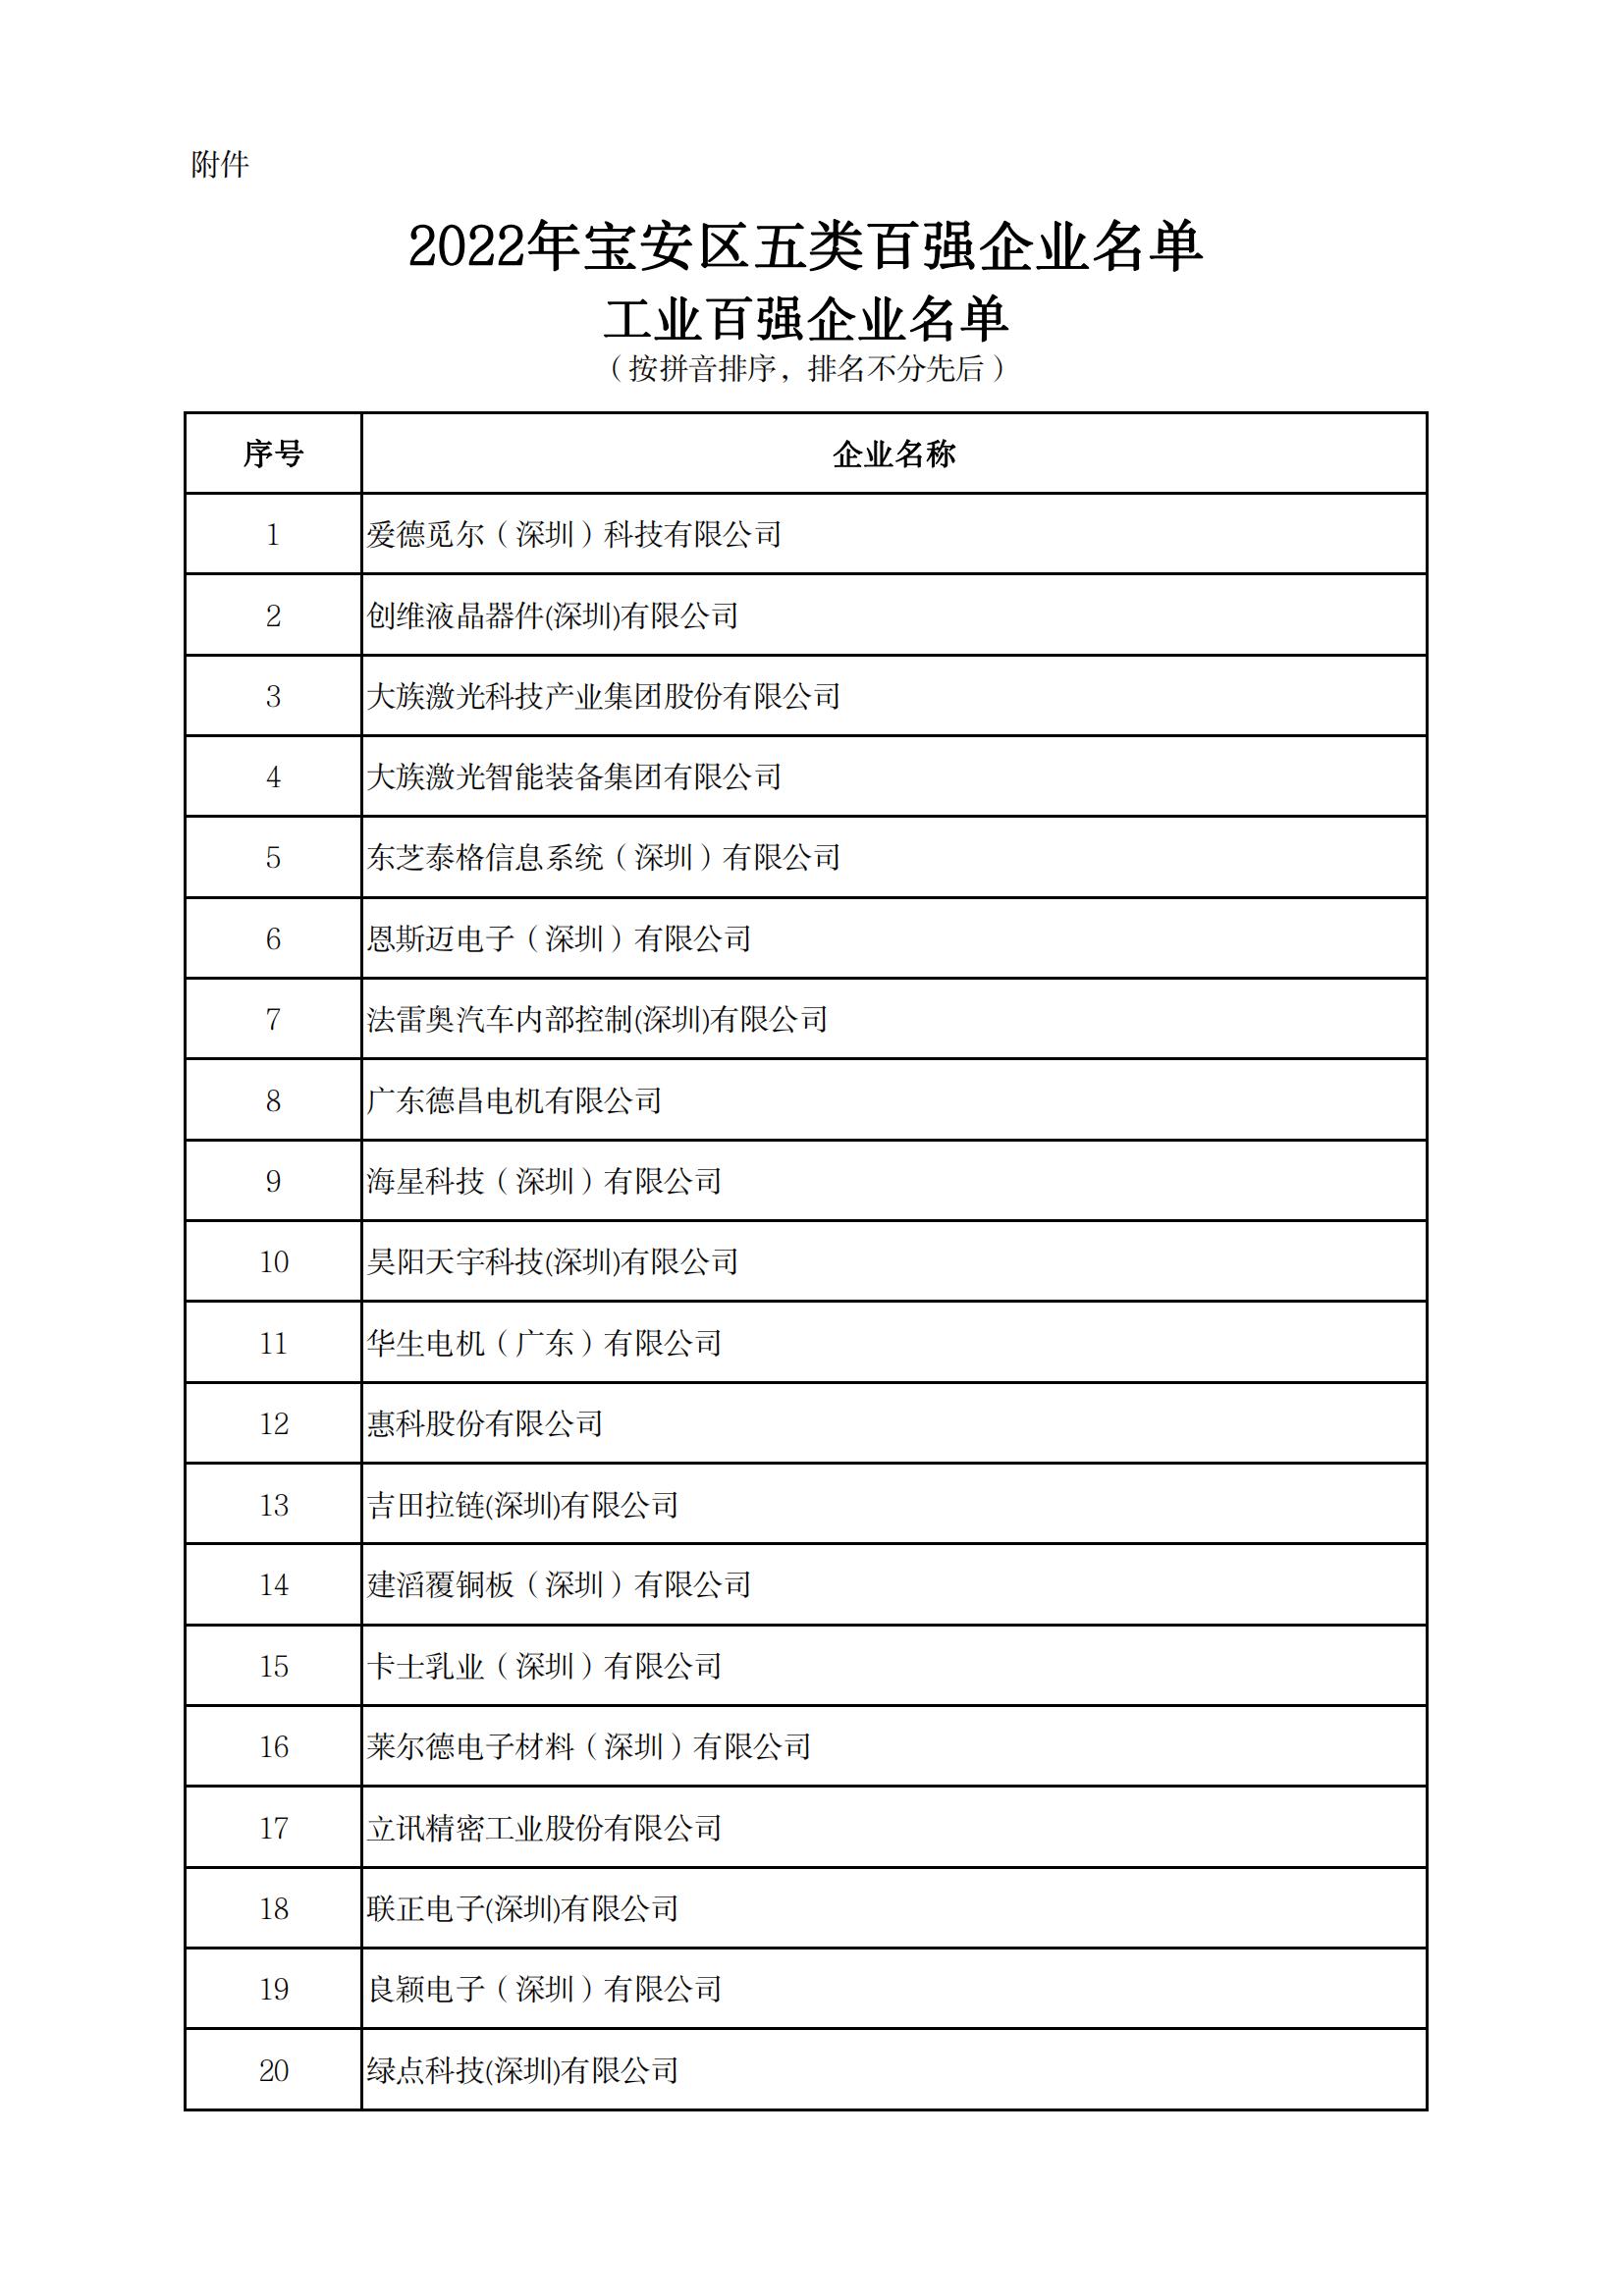 附件：2022年宝安区五类百强企业名单_00.jpg